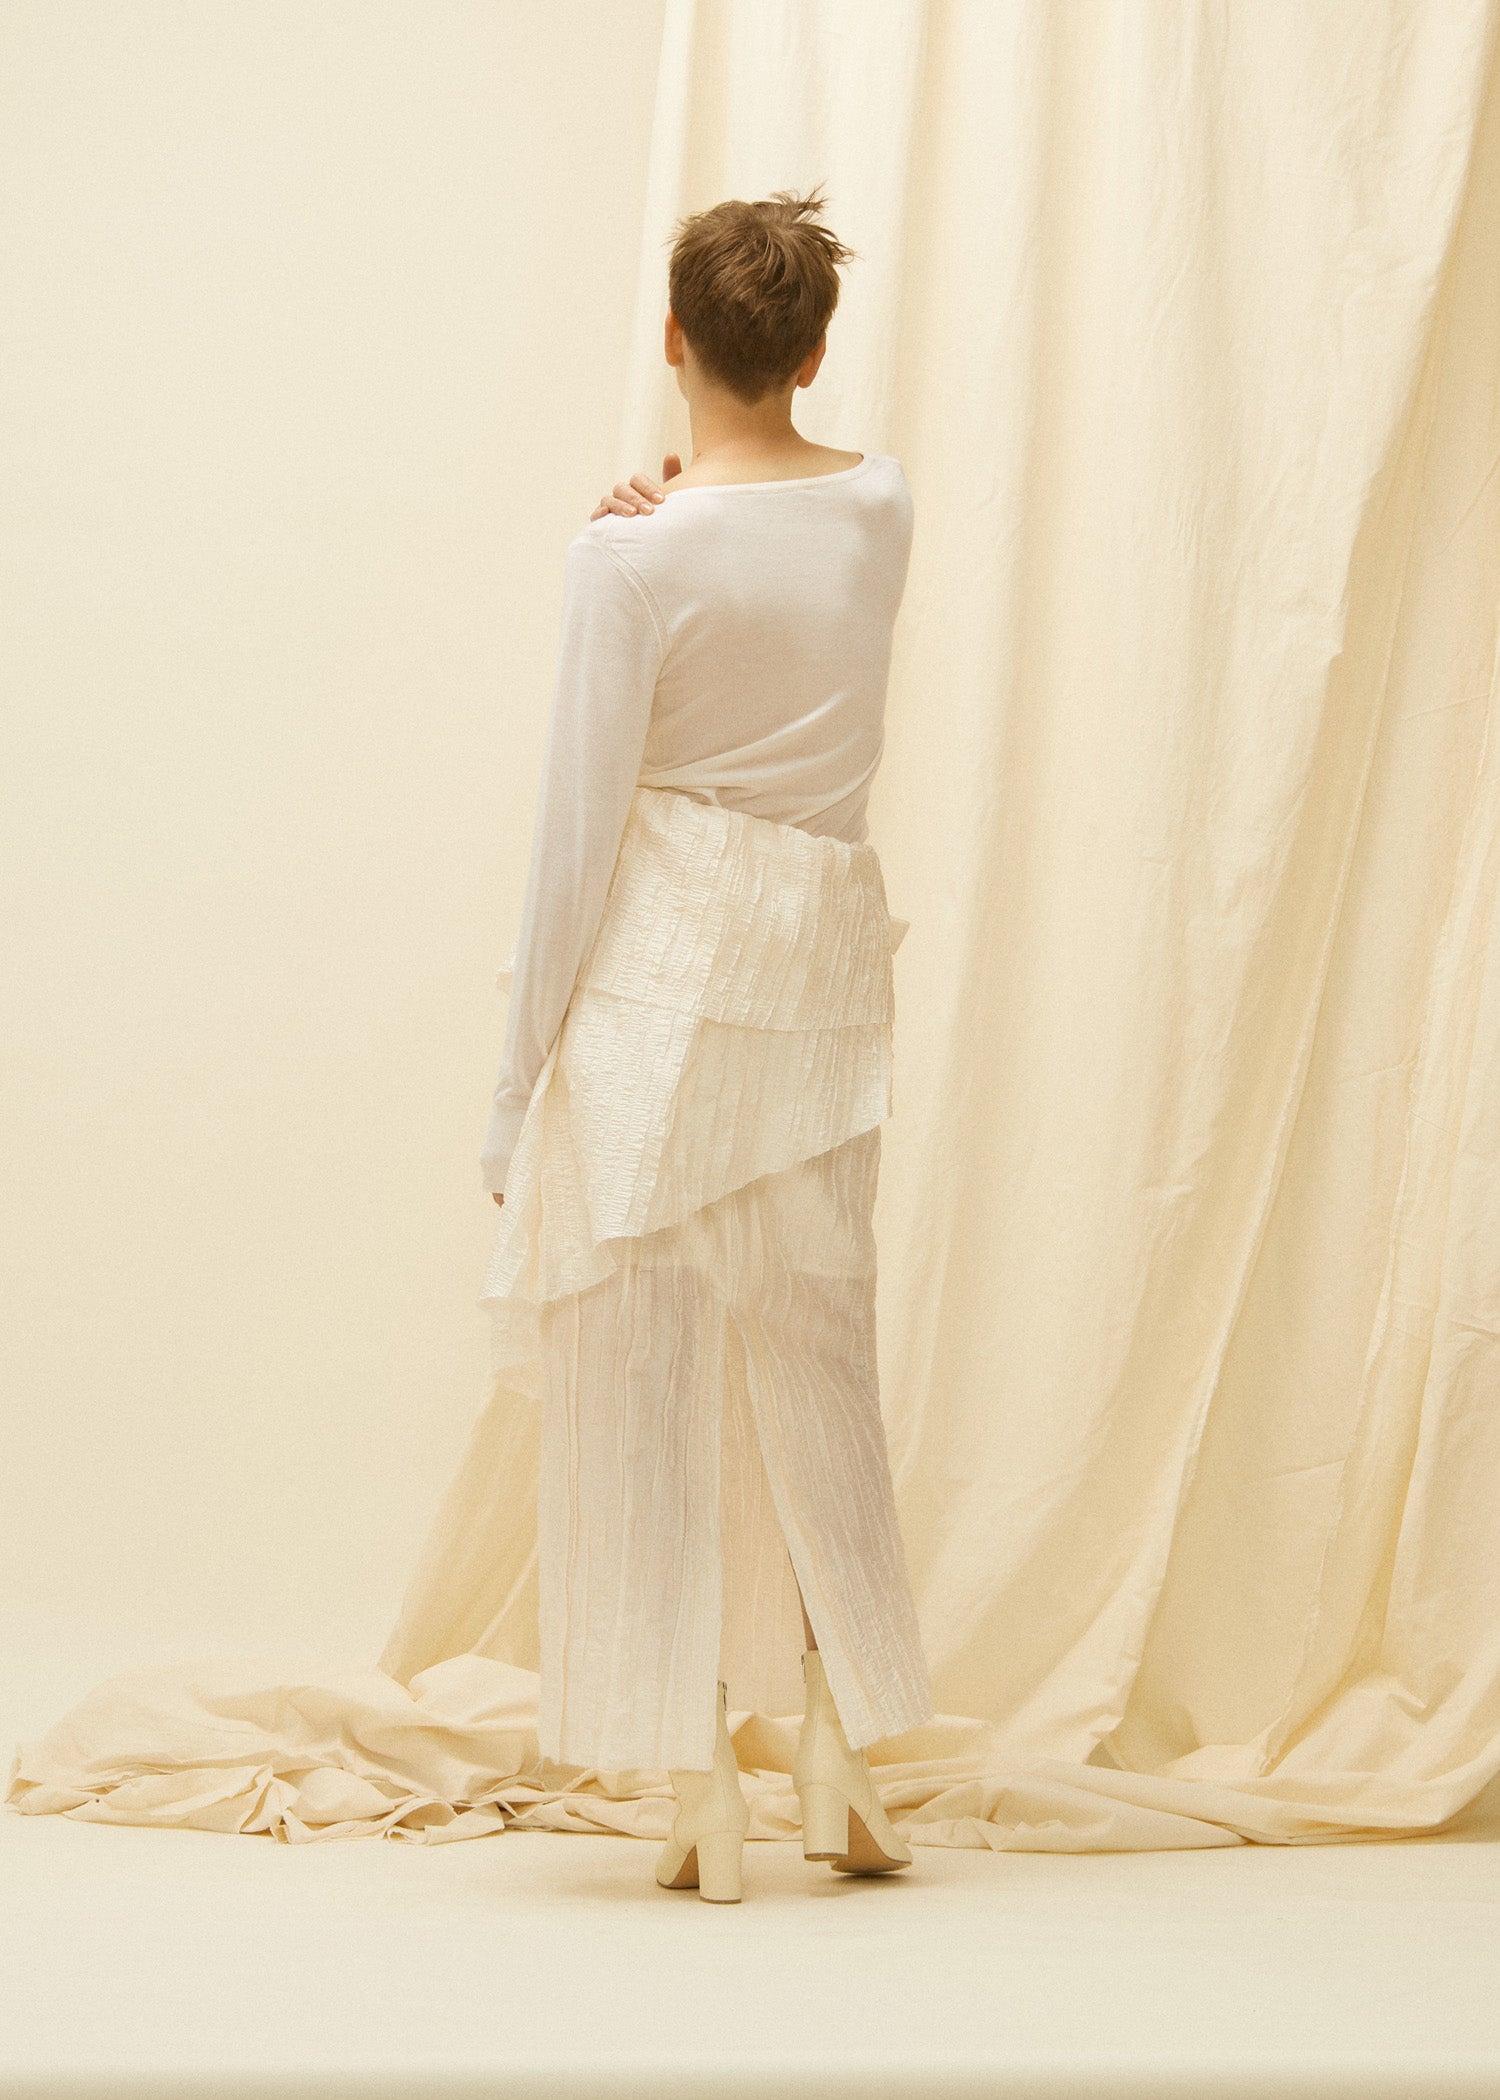 【Pre Order】Layer long skirt